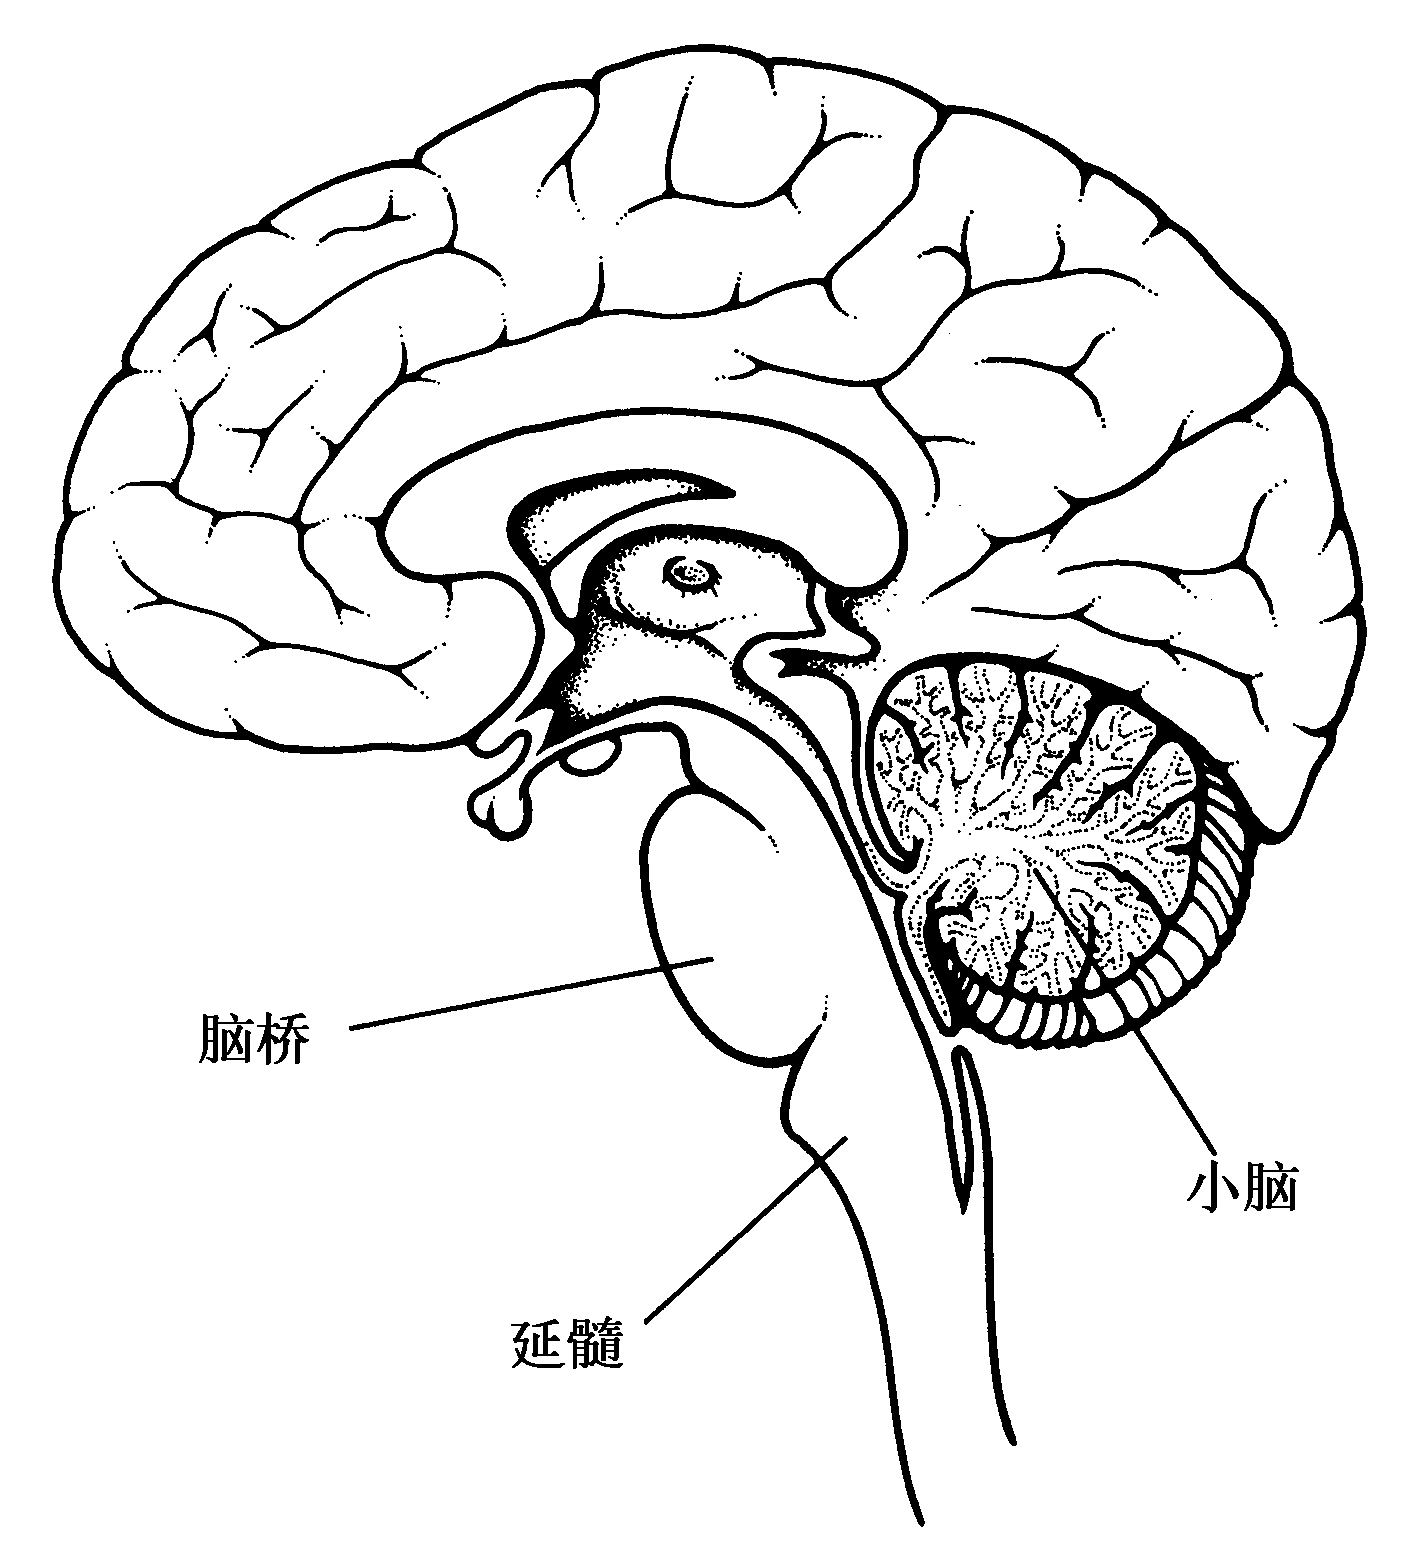 中枢神经系统疾病定位诊断图解——脑桥的解剖生理及定位诊断 - 脑医汇 - 神外资讯 - 神介资讯